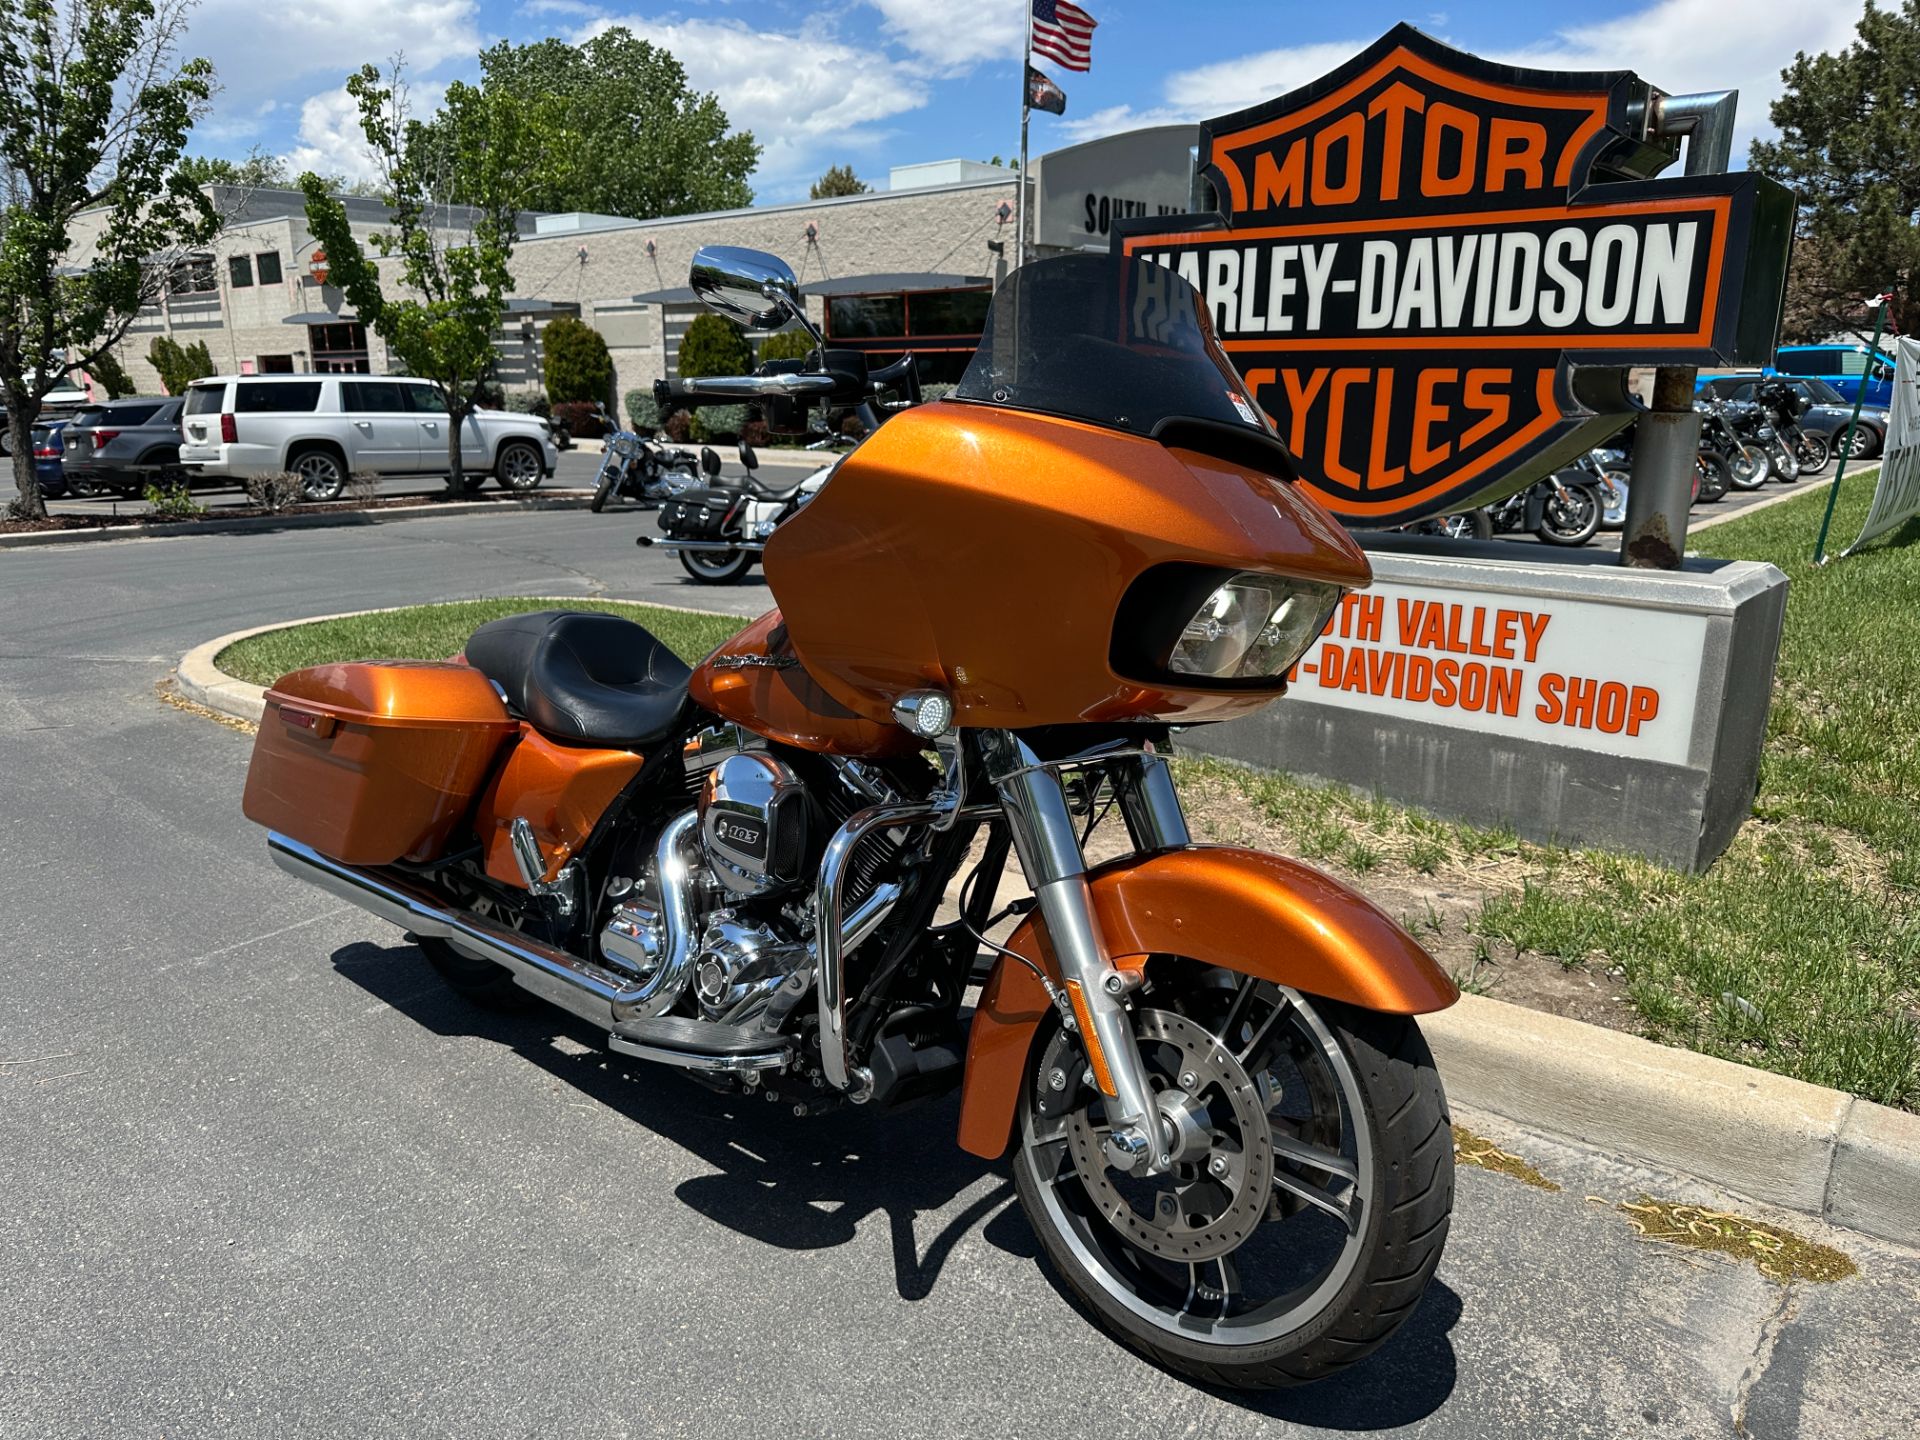 2016 Harley-Davidson Road Glide® in Sandy, Utah - Photo 2